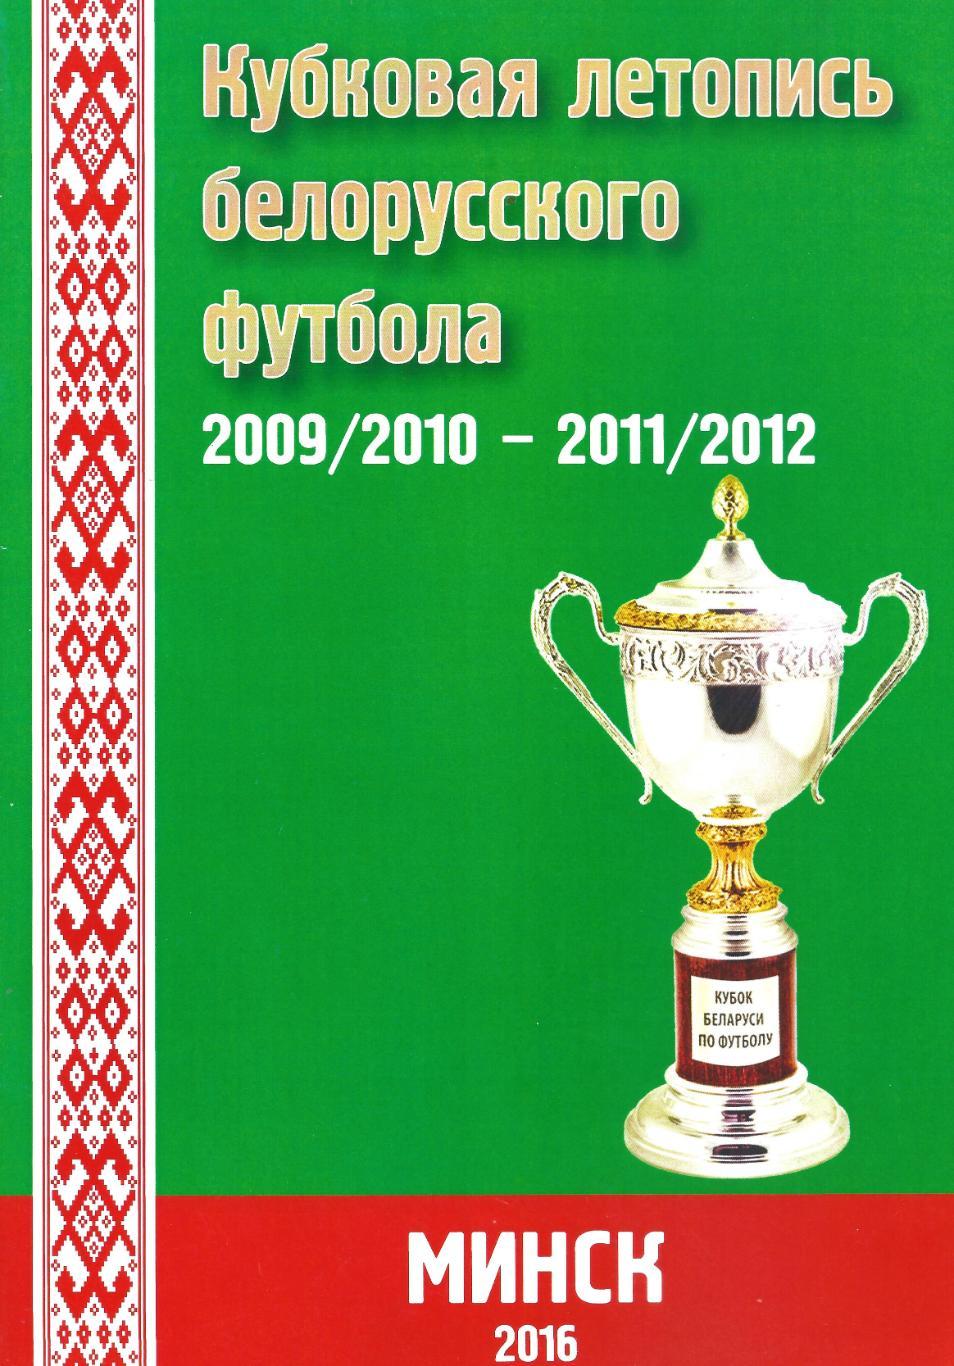 Кубковая летопись белорусского футбола 2009/2010 - 2011/2012. Часть 8